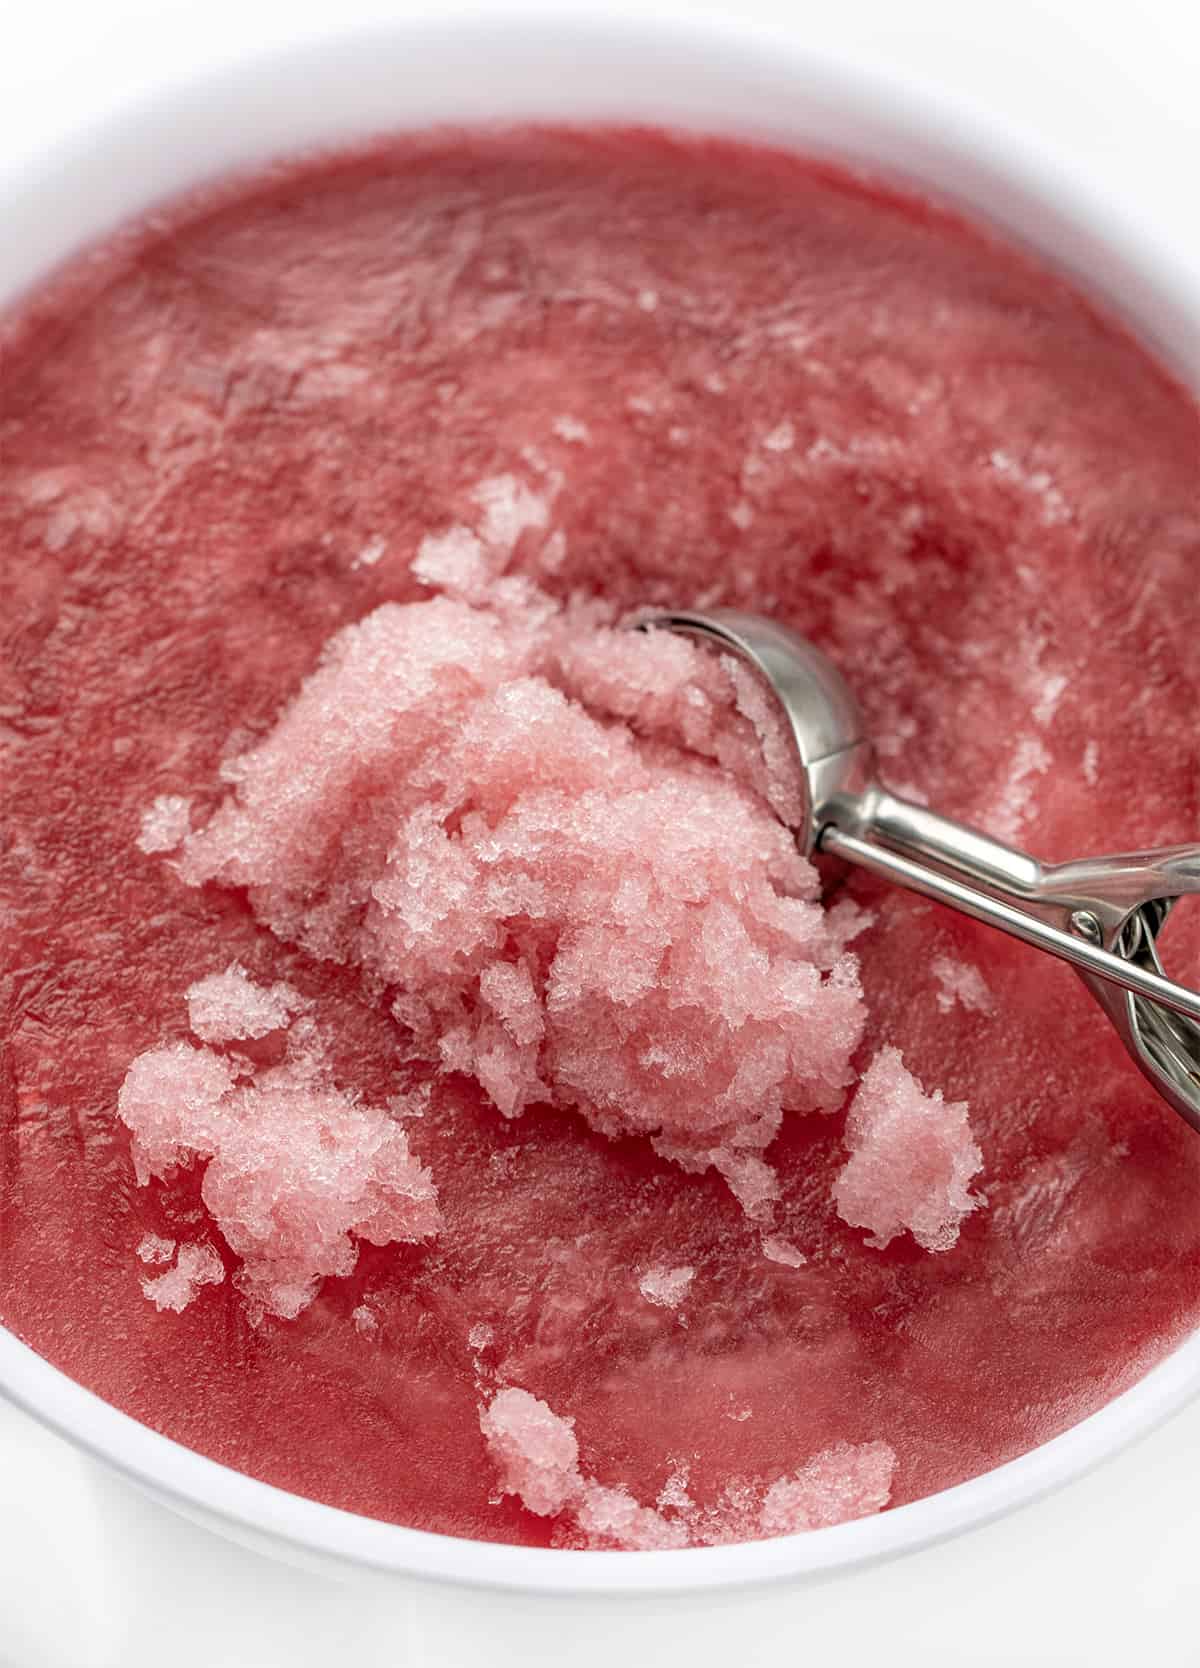 因斯冰淇淋勺铲起泥浆形成蔓越莓泥的容器。